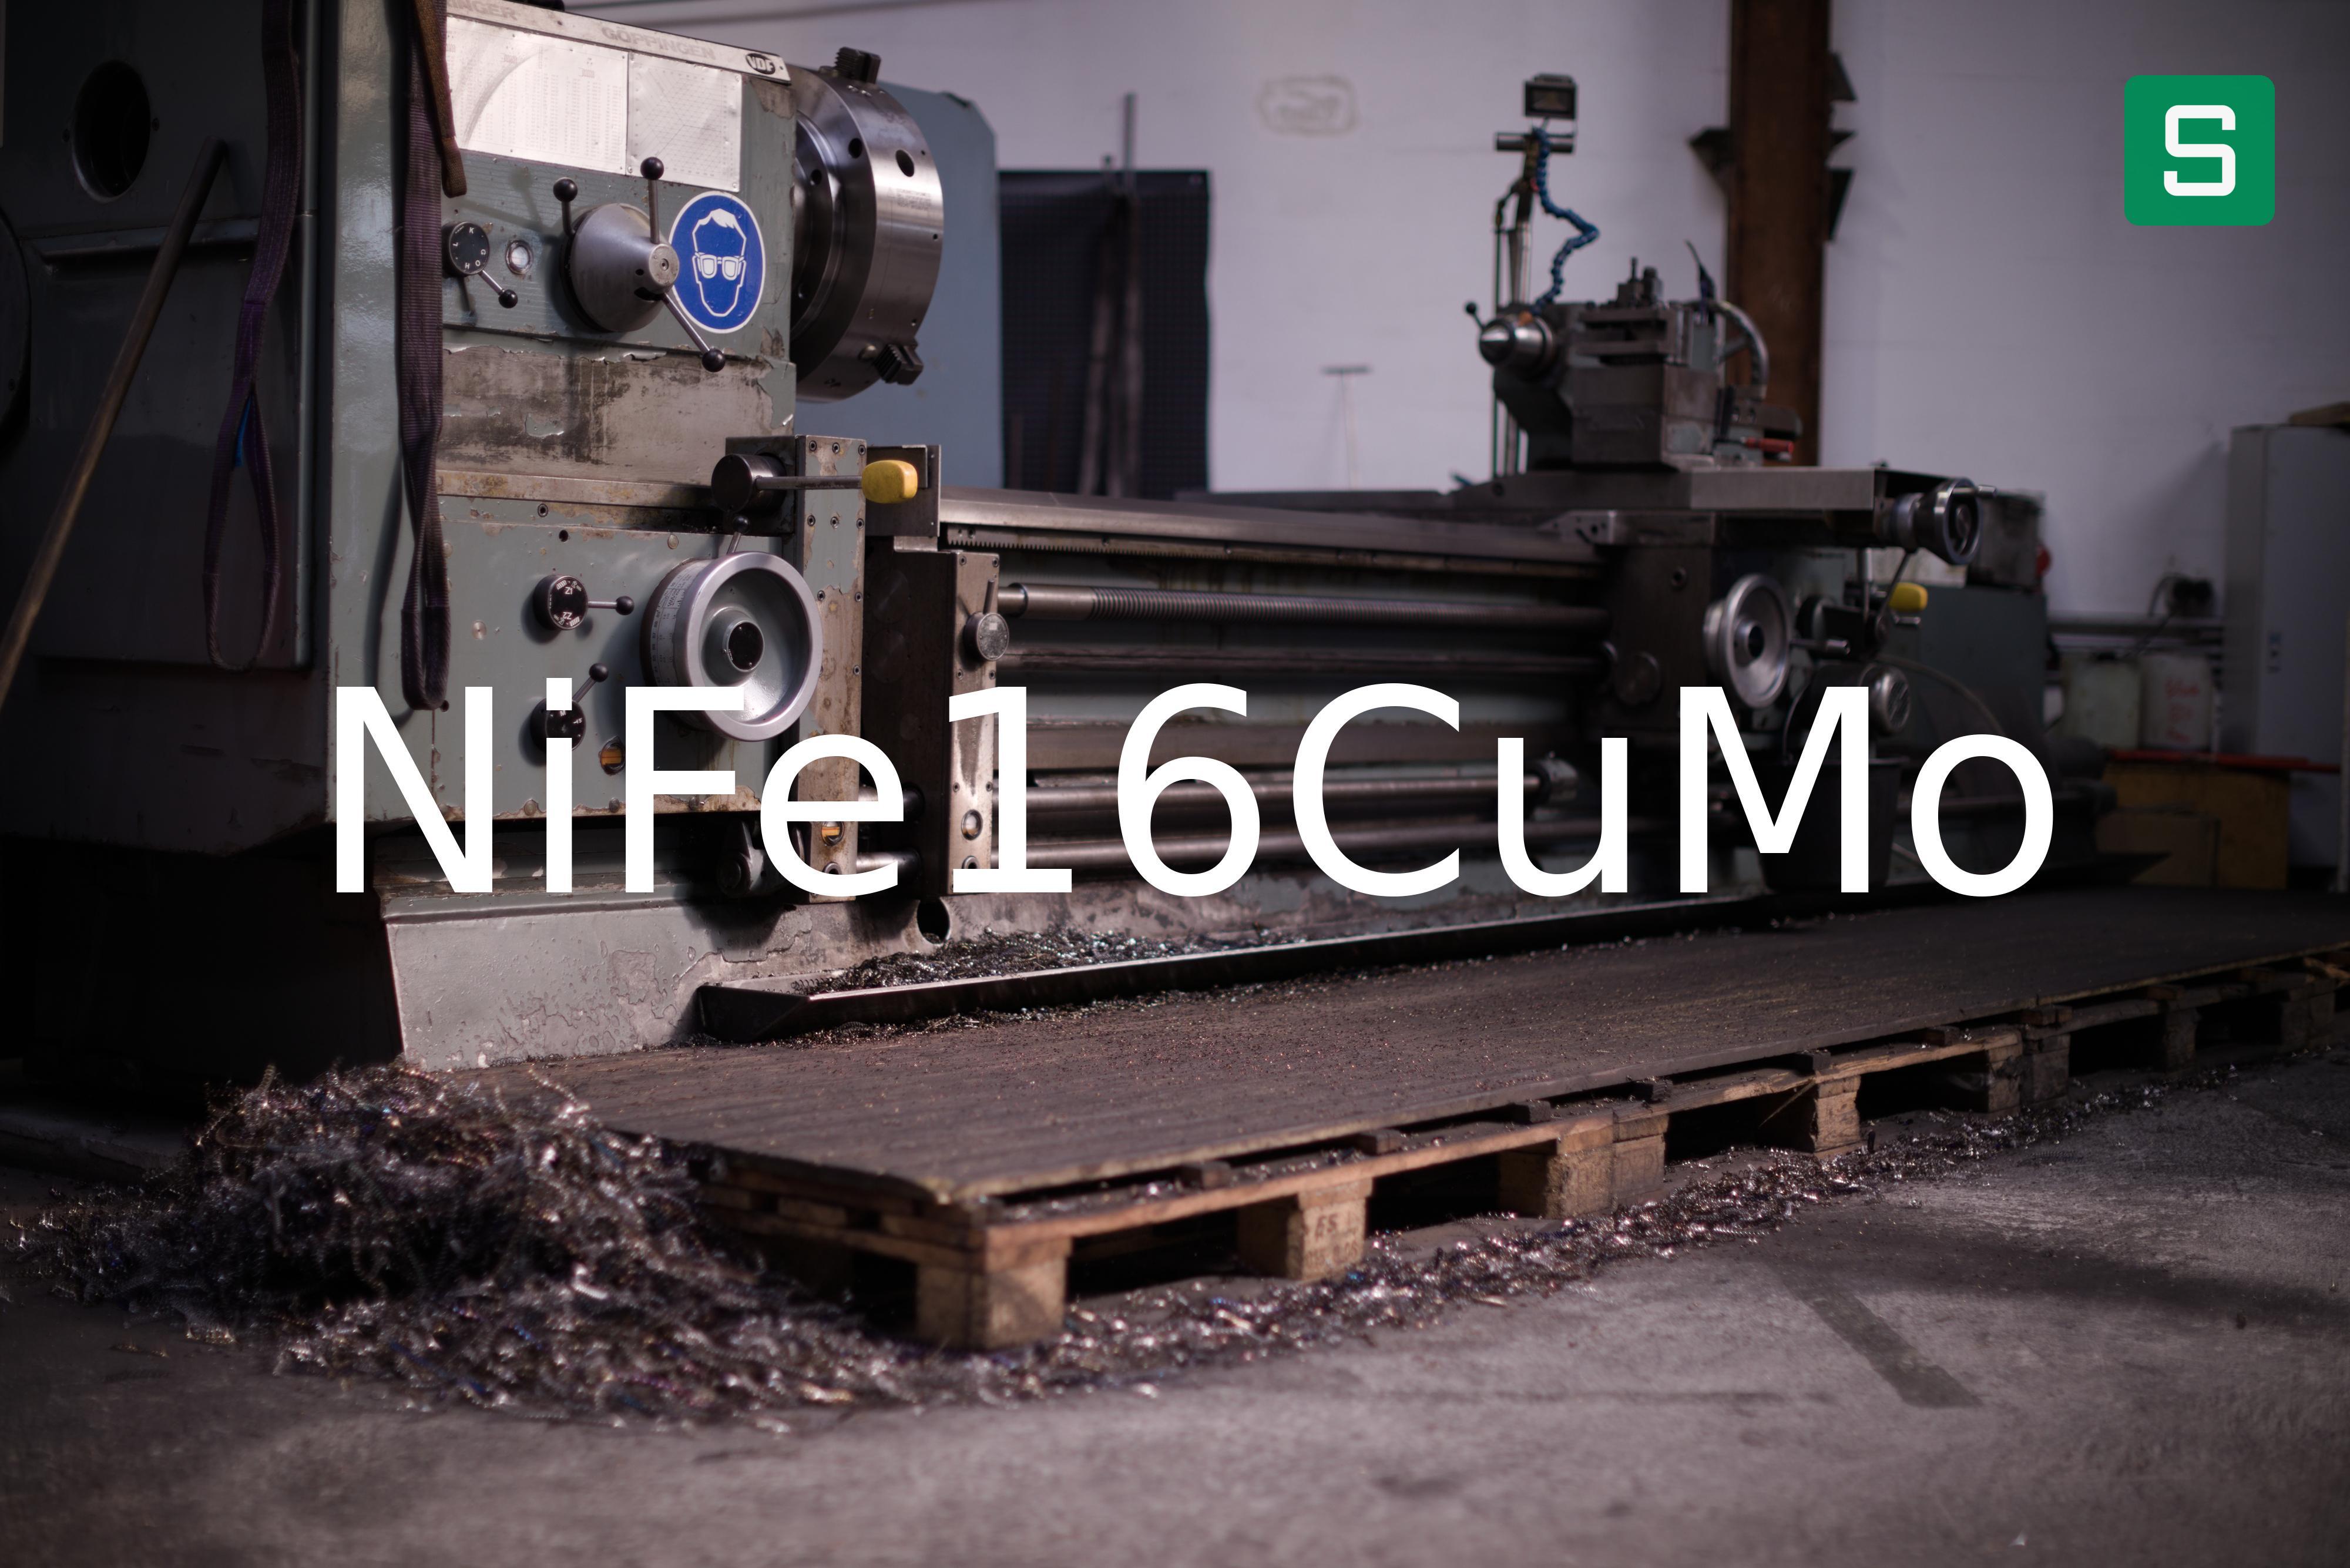 Steel Material: NiFe16CuMo